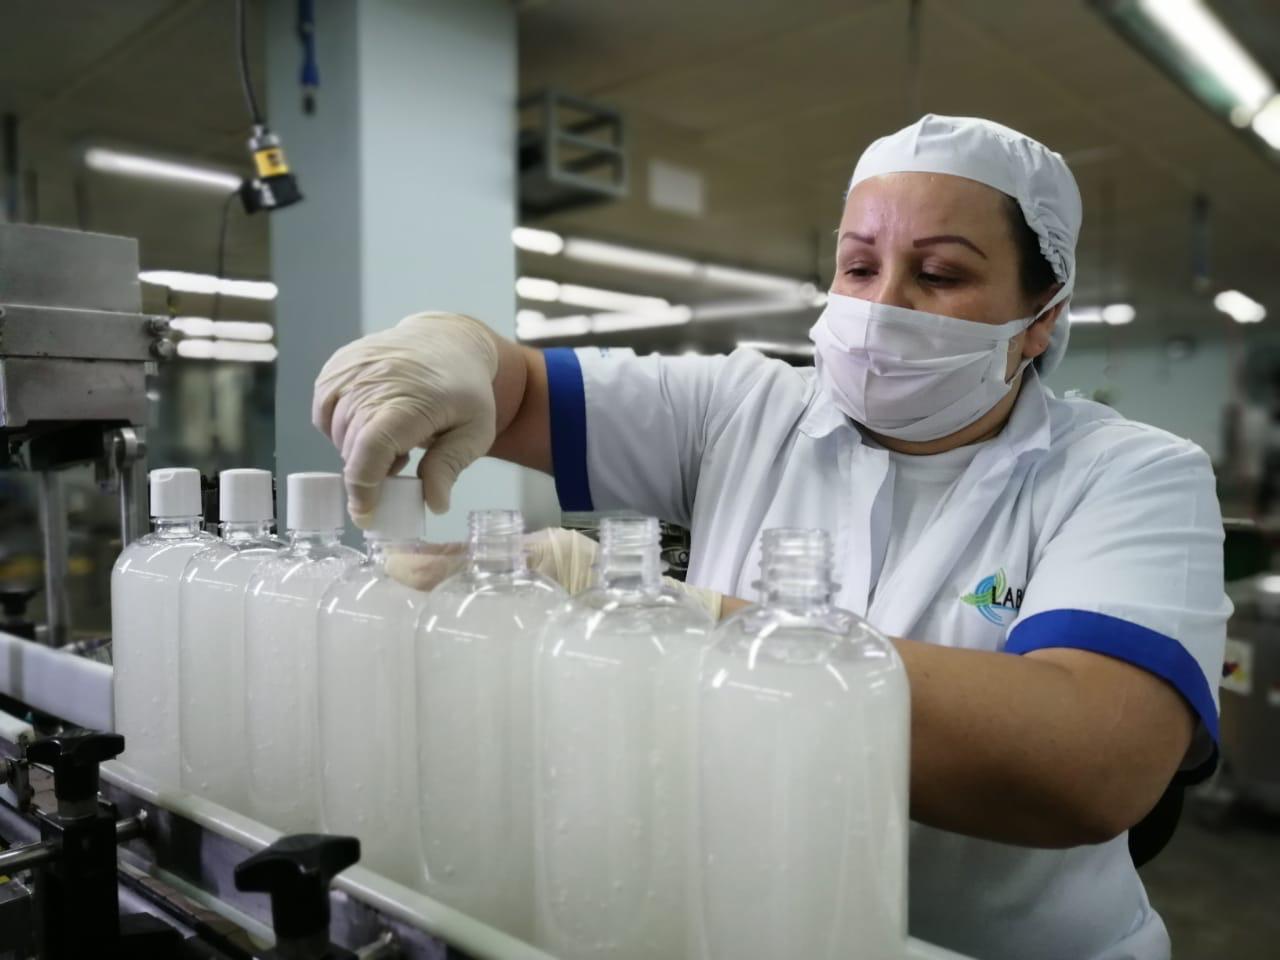 Laboratorios que producen alcohol en gel preocupados por materiales como envases